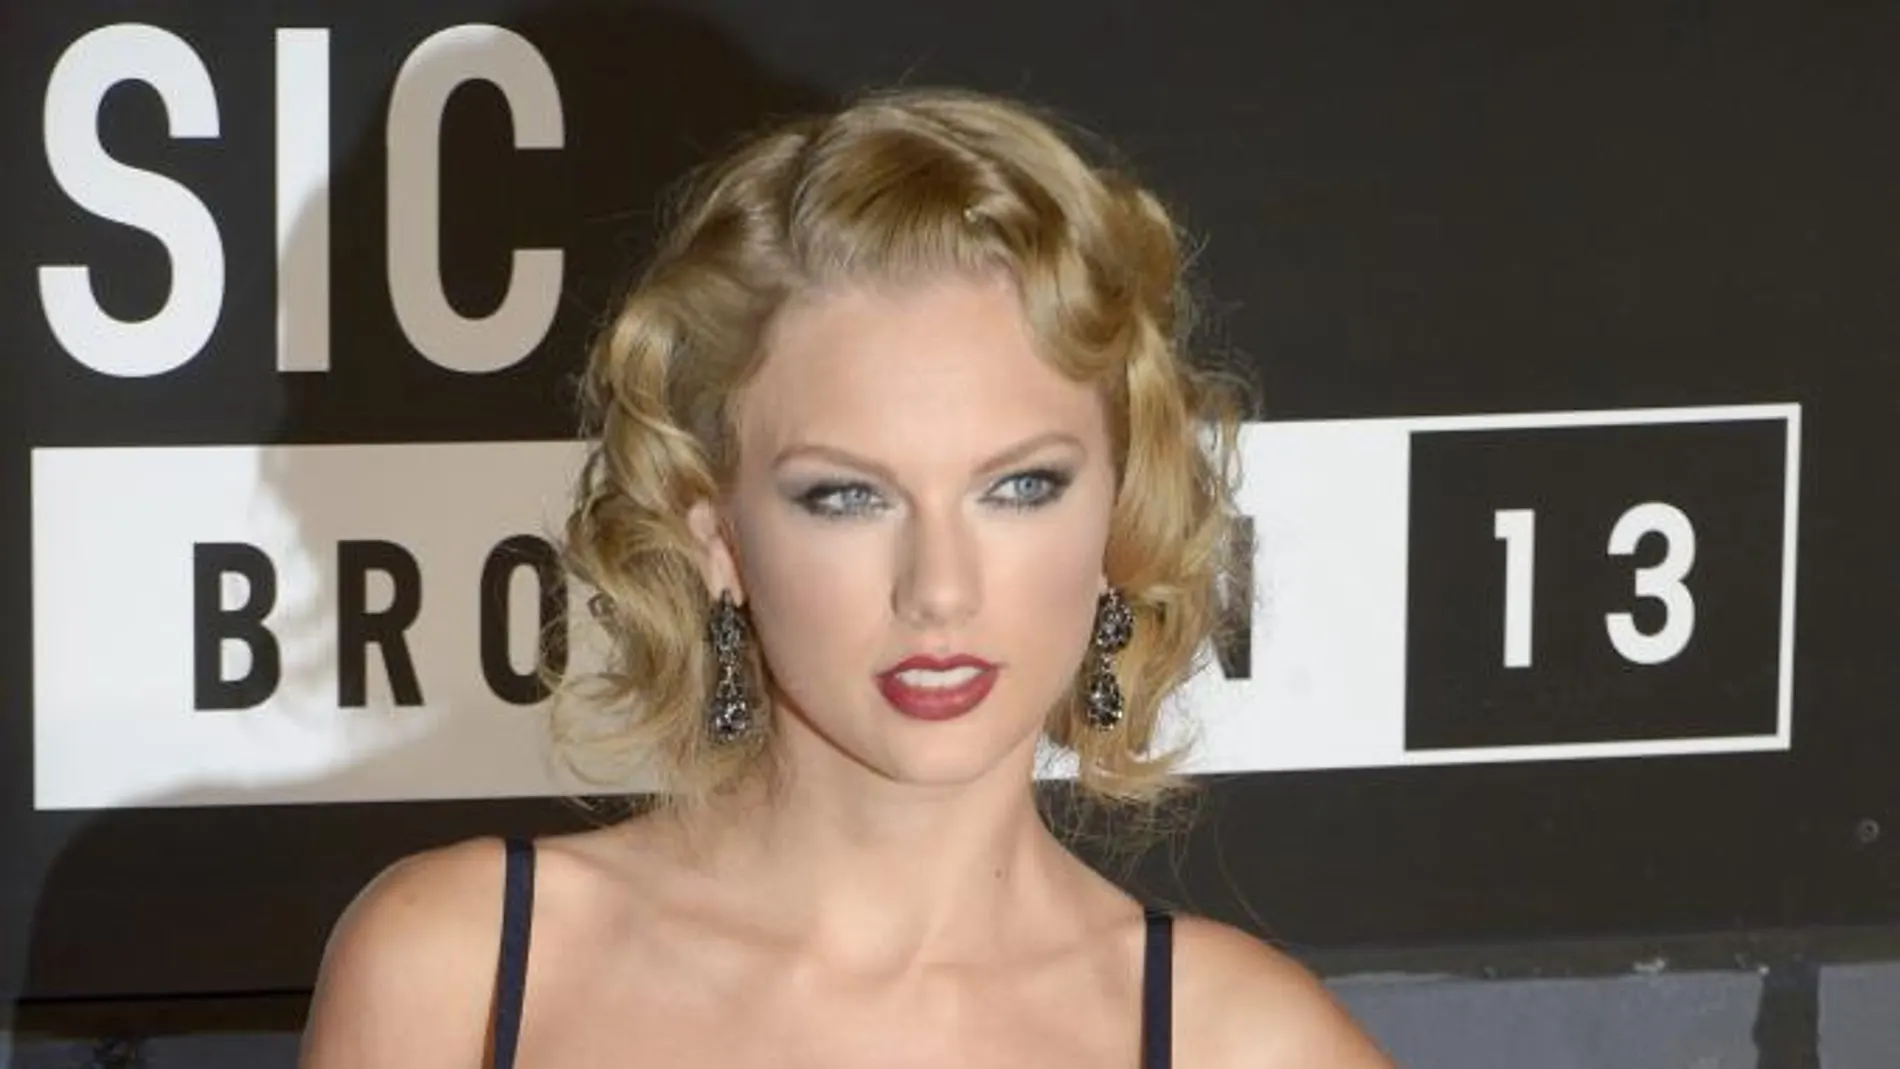 Fotografía de archivo del 25 de agosto de 2013 de la cantante estadounidense Taylor Swift a su llegada a los premios MTV Video Music Awards en Brooklyn, New York (EE.UU.)